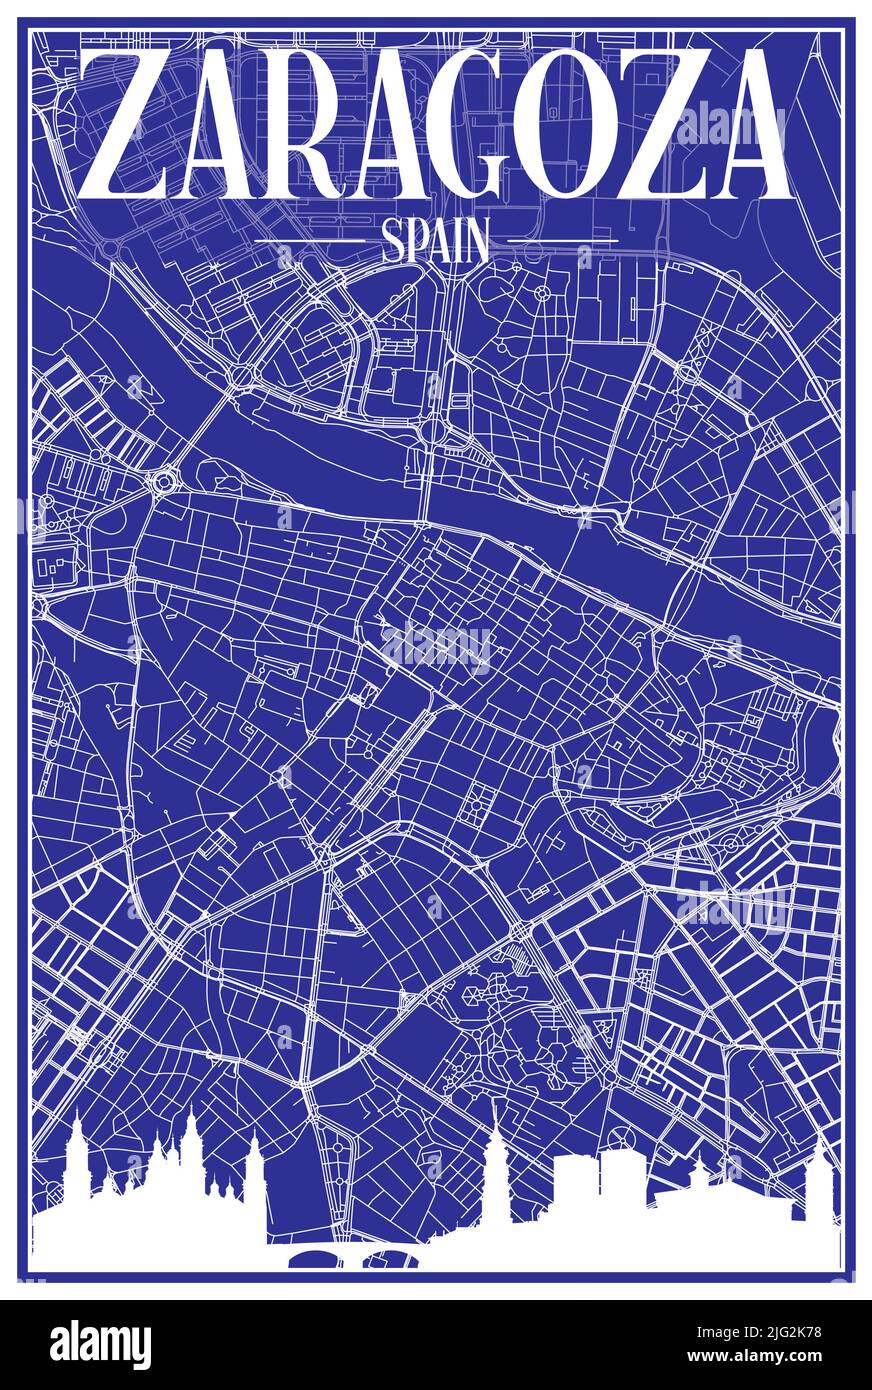 Technisches Zeichnungsausdruck Stadtplakat mit Panorama-Skyline und handgezeichneten Straßen Netzwerk auf blauem Hintergrund der Innenstadt VON ZARAGOZA, SPANIEN Stock Vektor